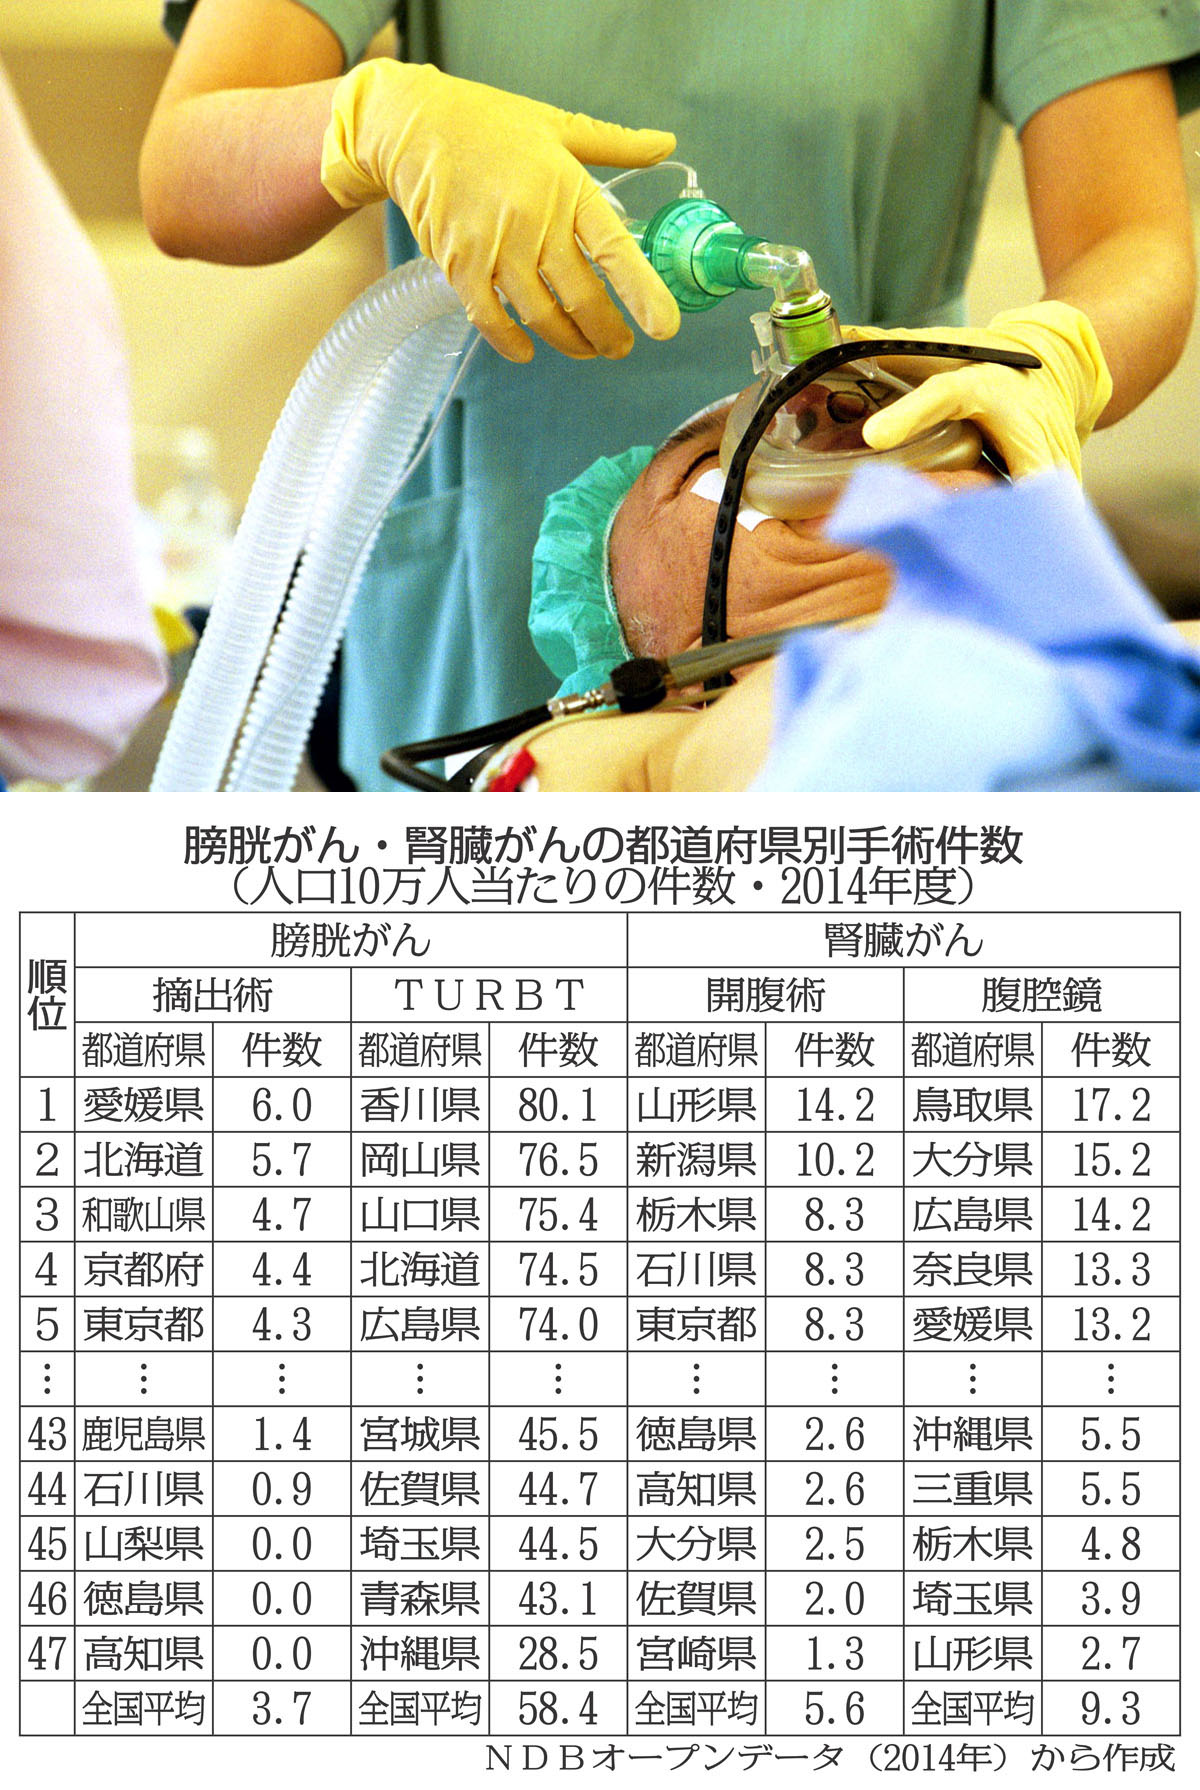 膀胱がんと腎臓がんの都道府県別手術件数